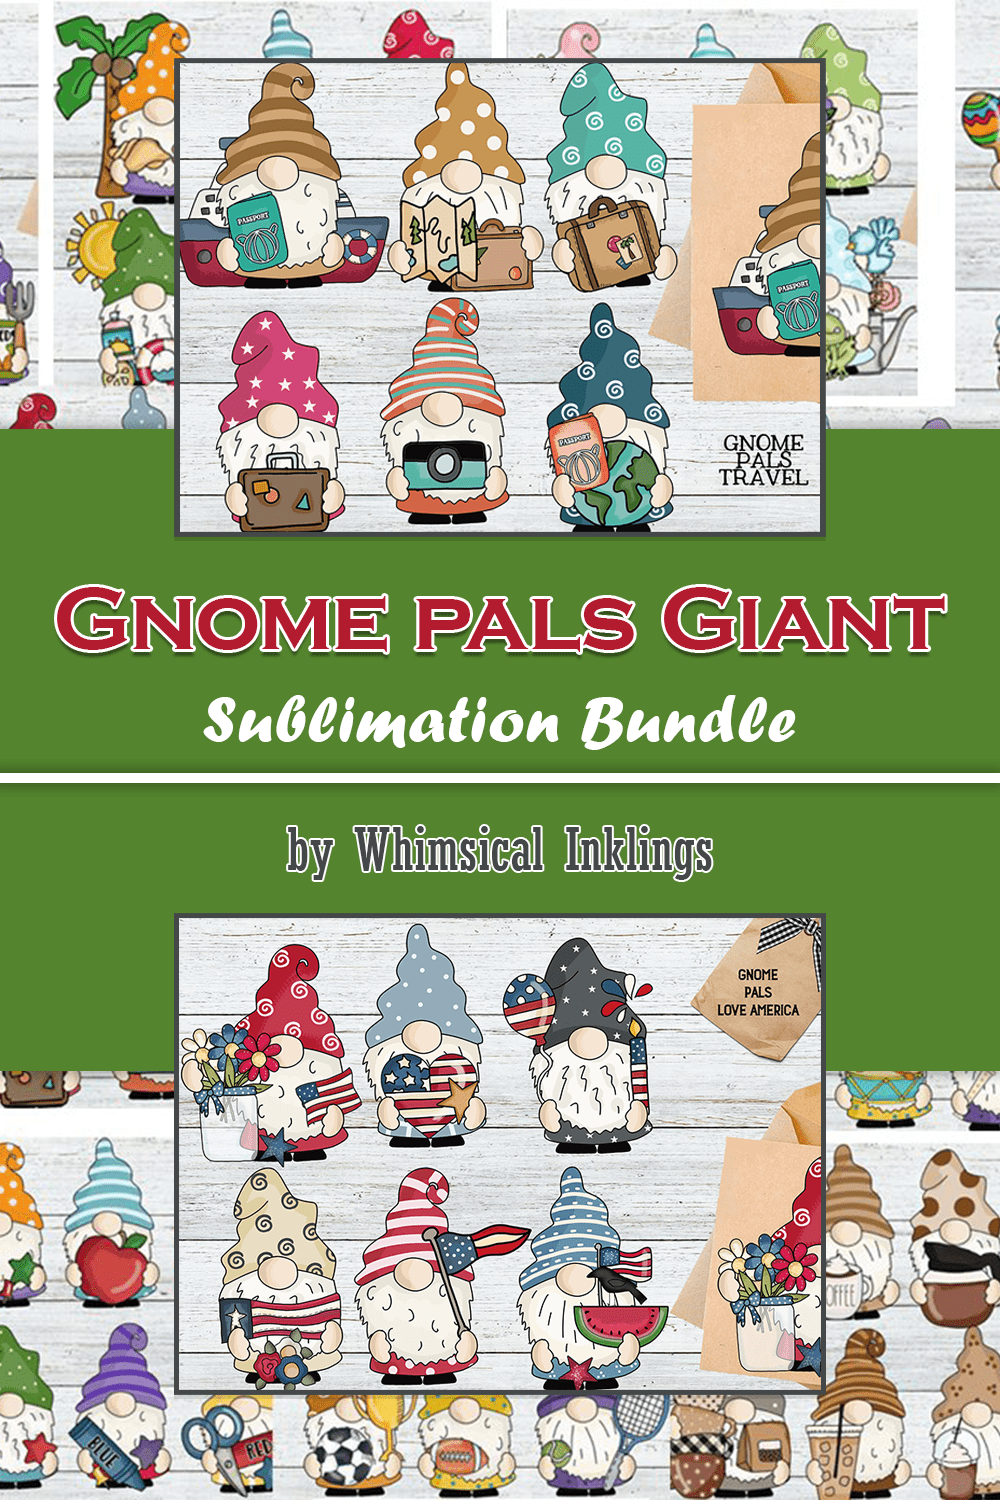 Gnome pals Giant Sublimation Bundle - pinterest image preview.